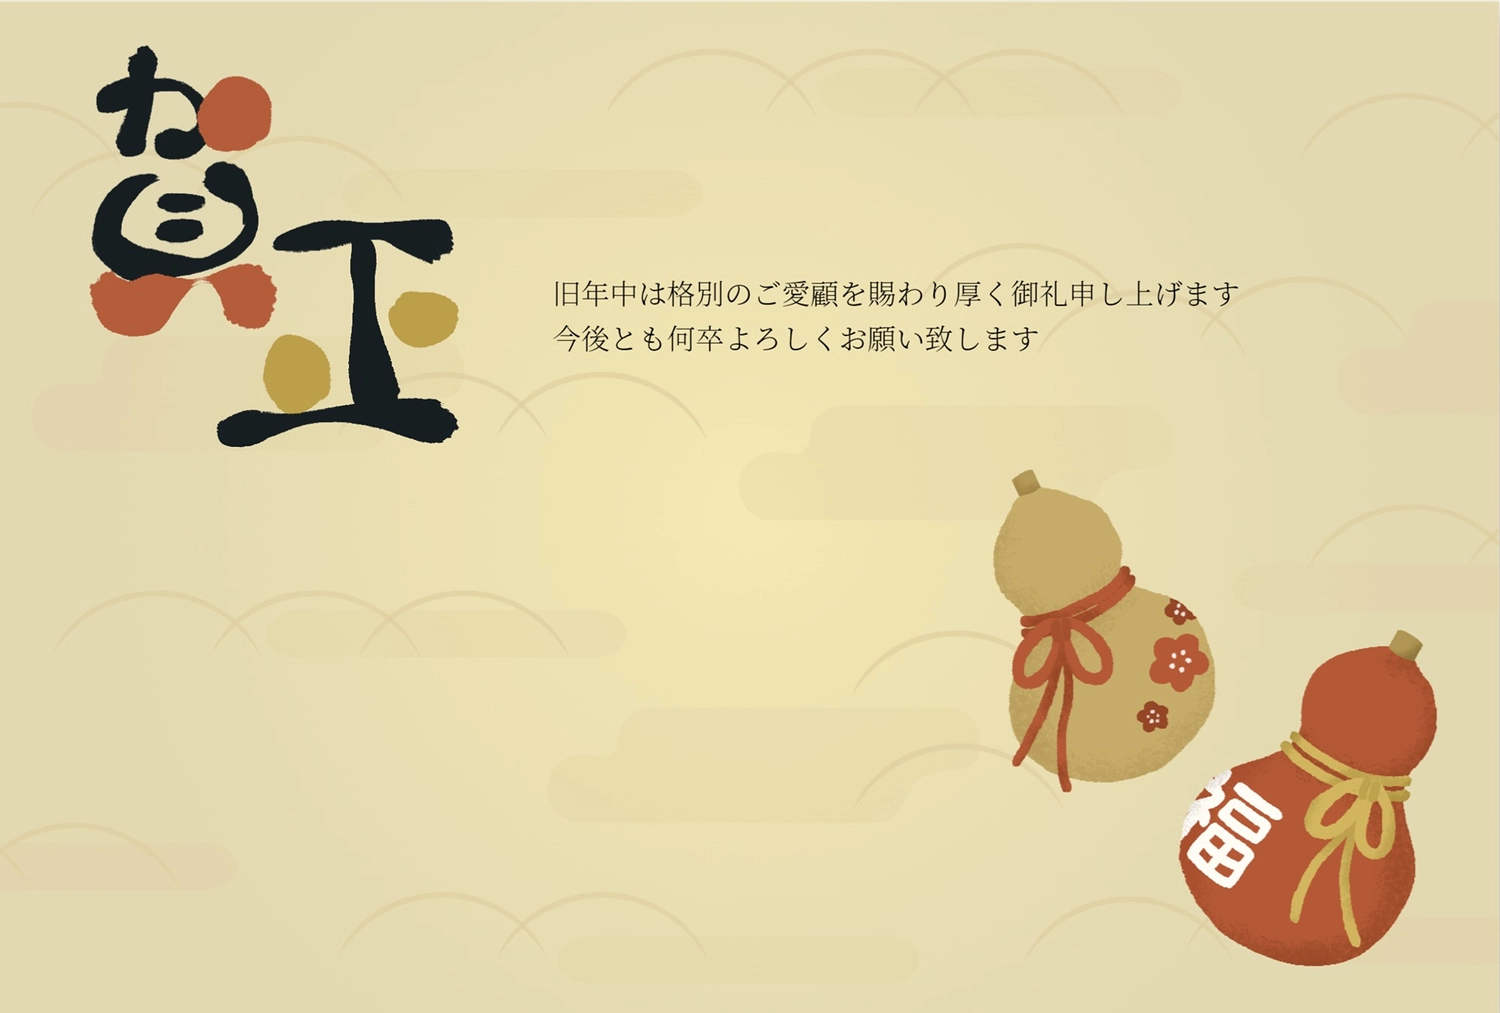 瓢箪の年賀状, Brush character, Color background, business, New Year Card template